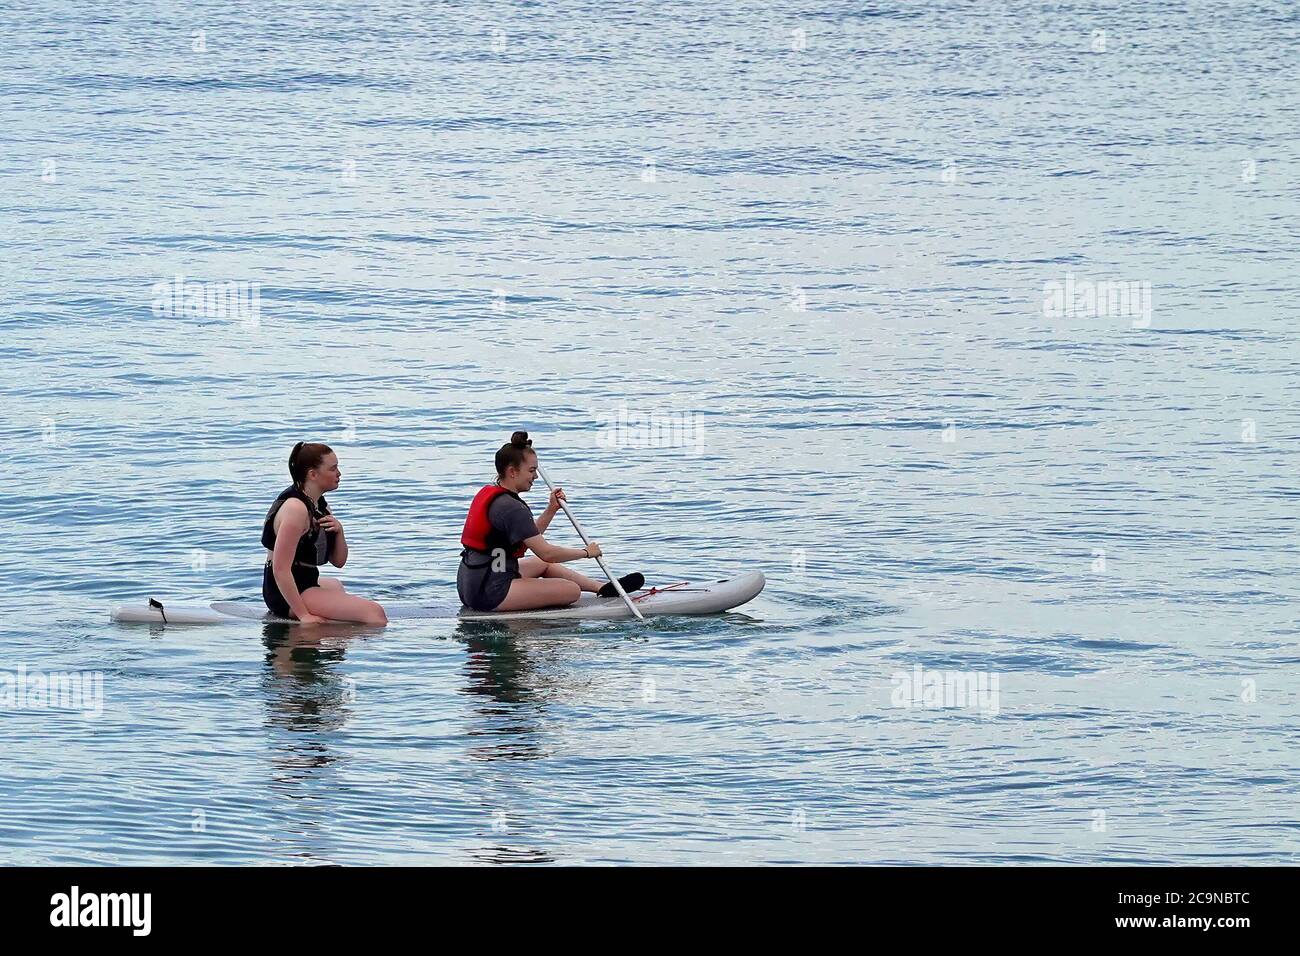 Deux femmes assises et paddle-board sur le paddle-board Eau calme et tranquille sur l'estuaire de la Tamise près du rivage Southend on Sea Essex Angleterre Royaume-Uni Banque D'Images